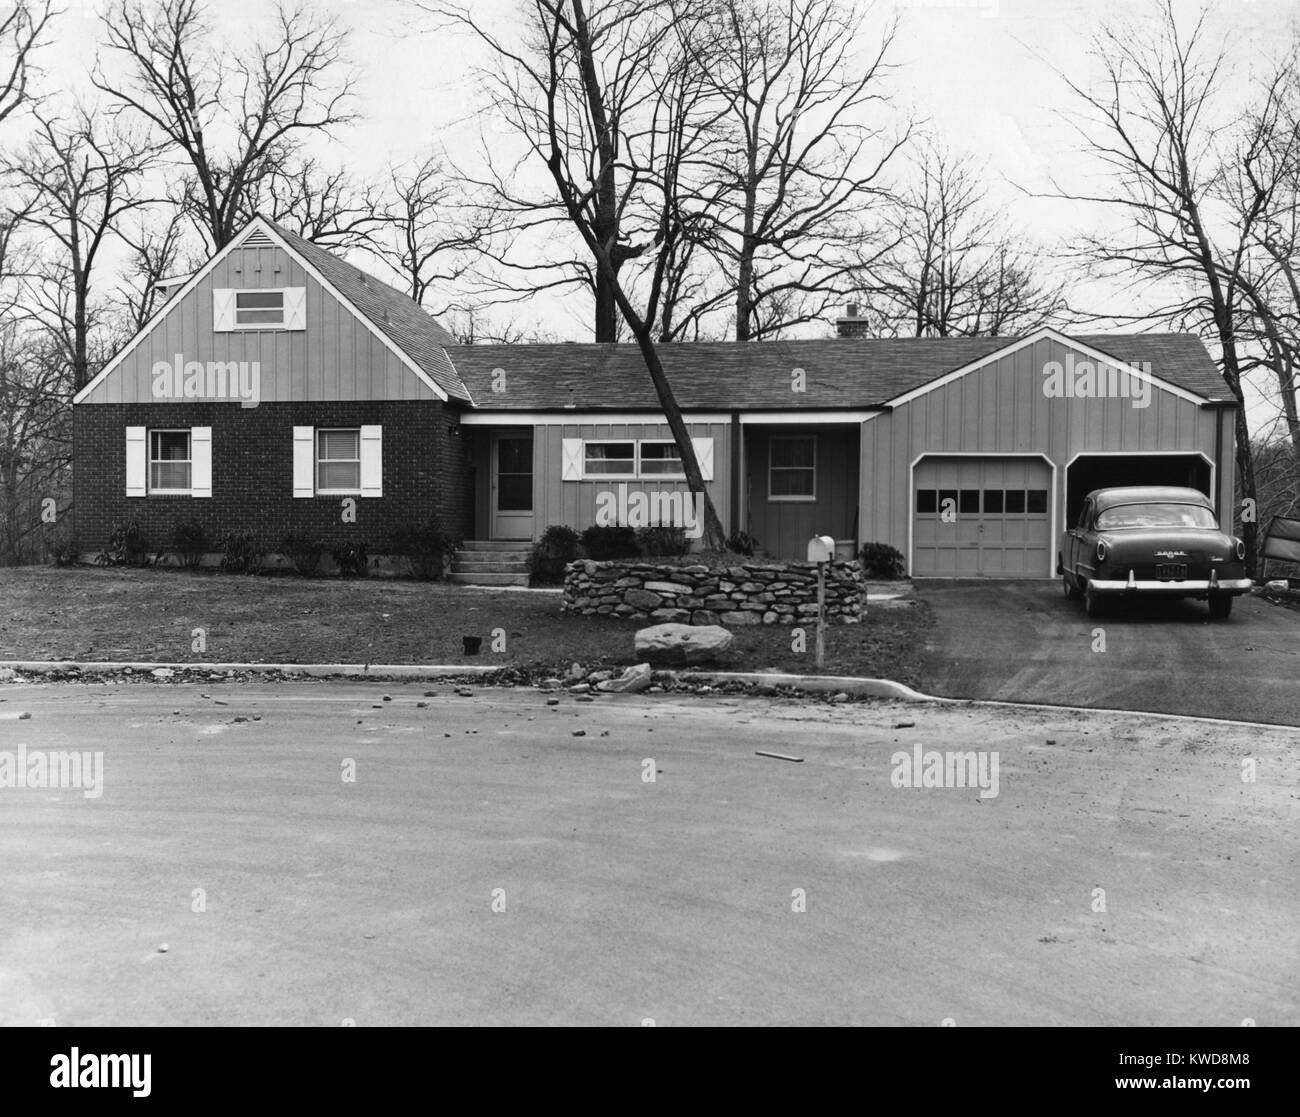 Casa suburbana in Mt. Vernon, New York, al confine della città di New York il Bronx borough. La nuova casa ha due garage auto e uno dei primi anni cinquanta Dodge auto parcheggiate nel viale di accesso (BSLOC 2016 7 18) Foto Stock